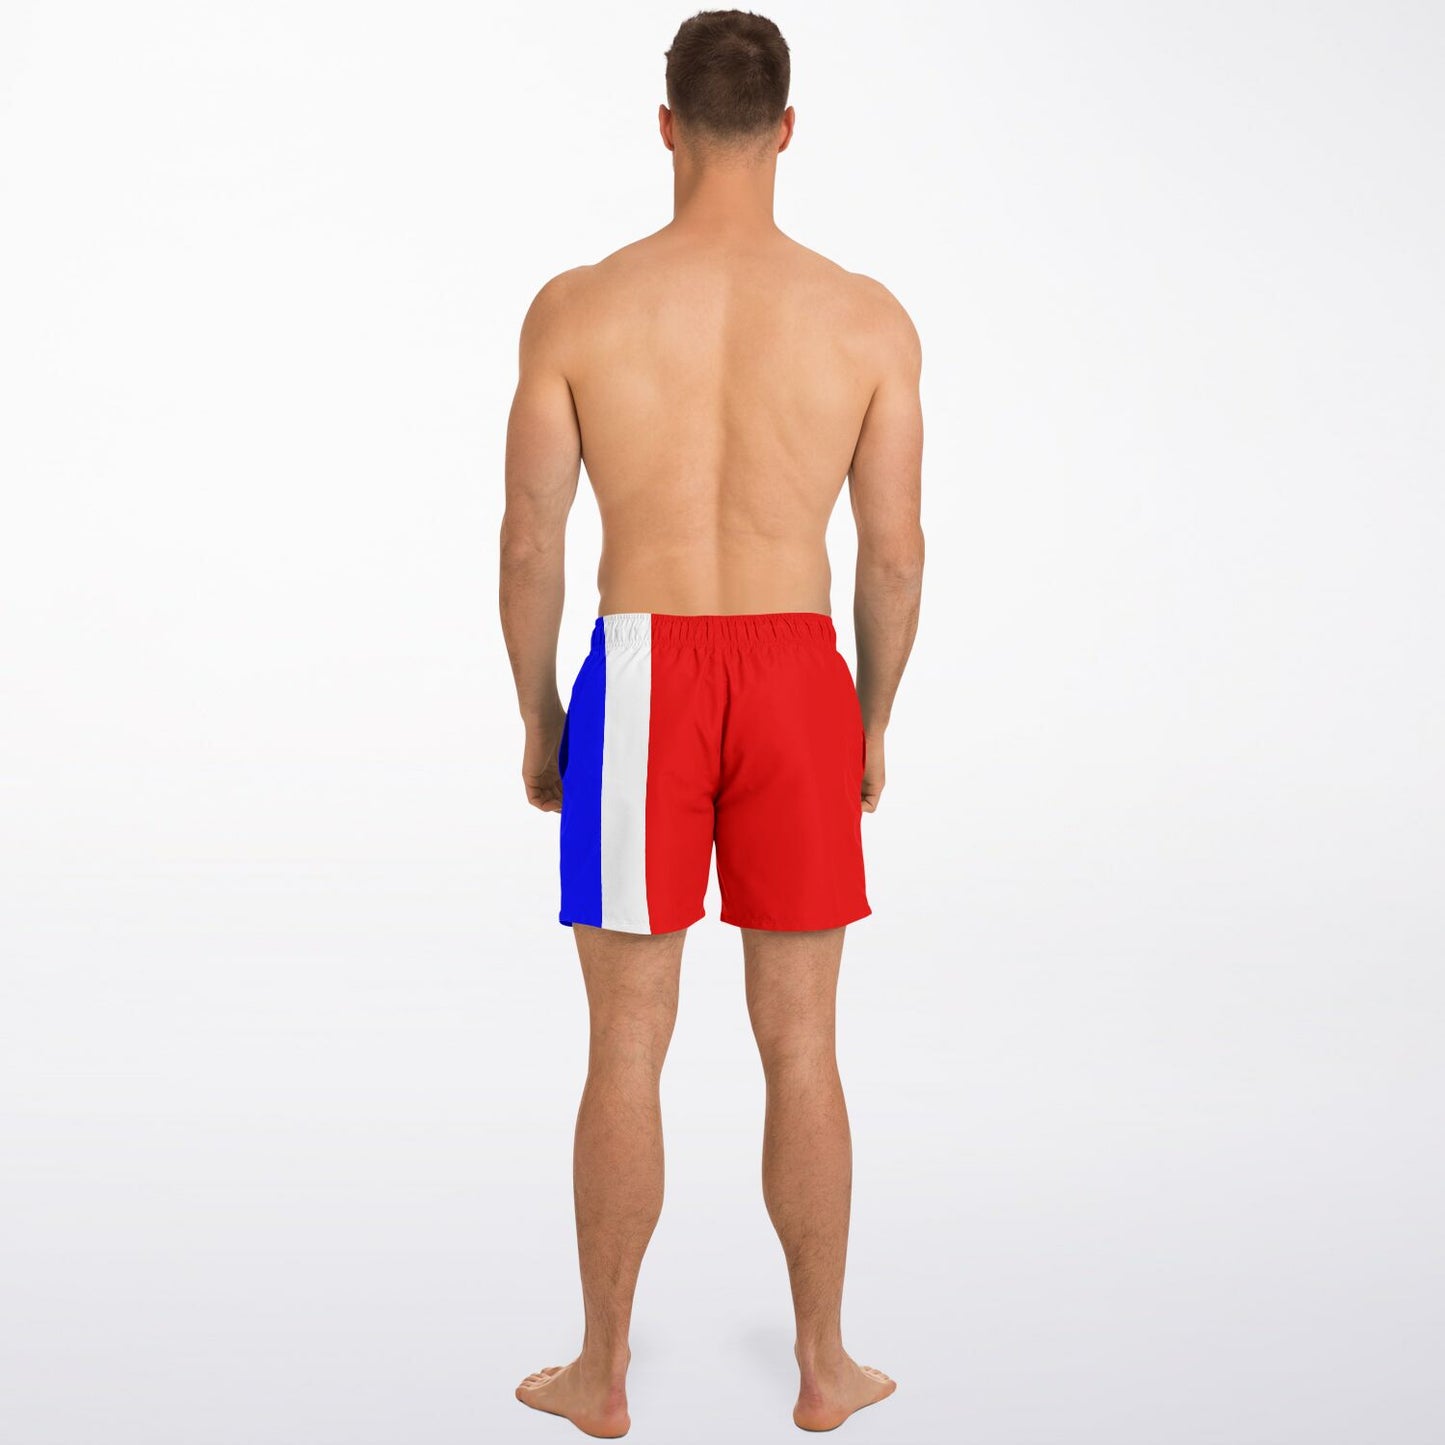 Signals Nautical Inspired Men's Swim Shorts - THREE